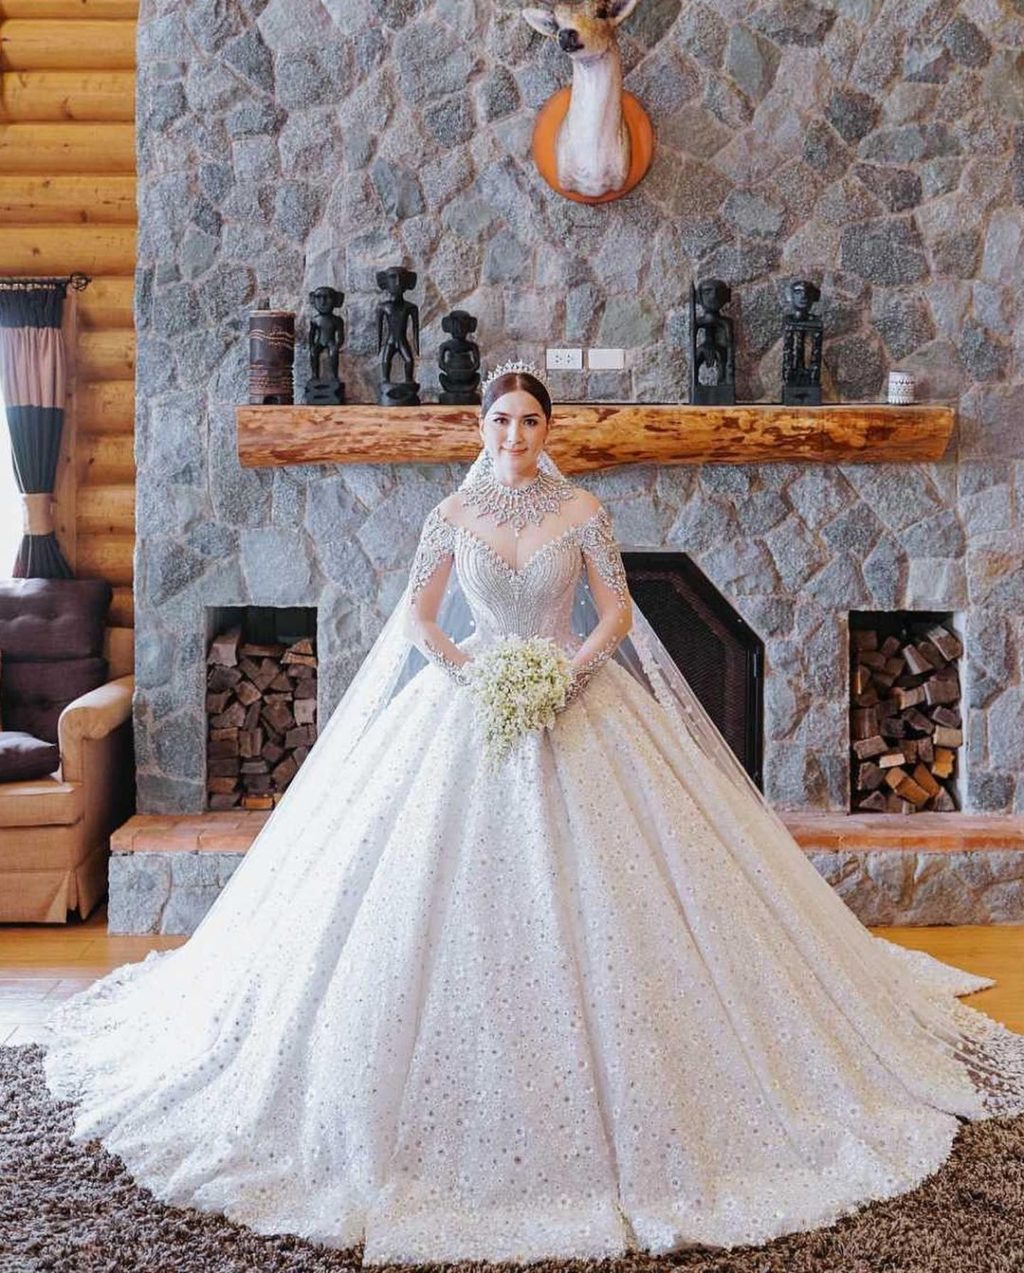 Actress Ara Mina looks stunning on her wedding gown.